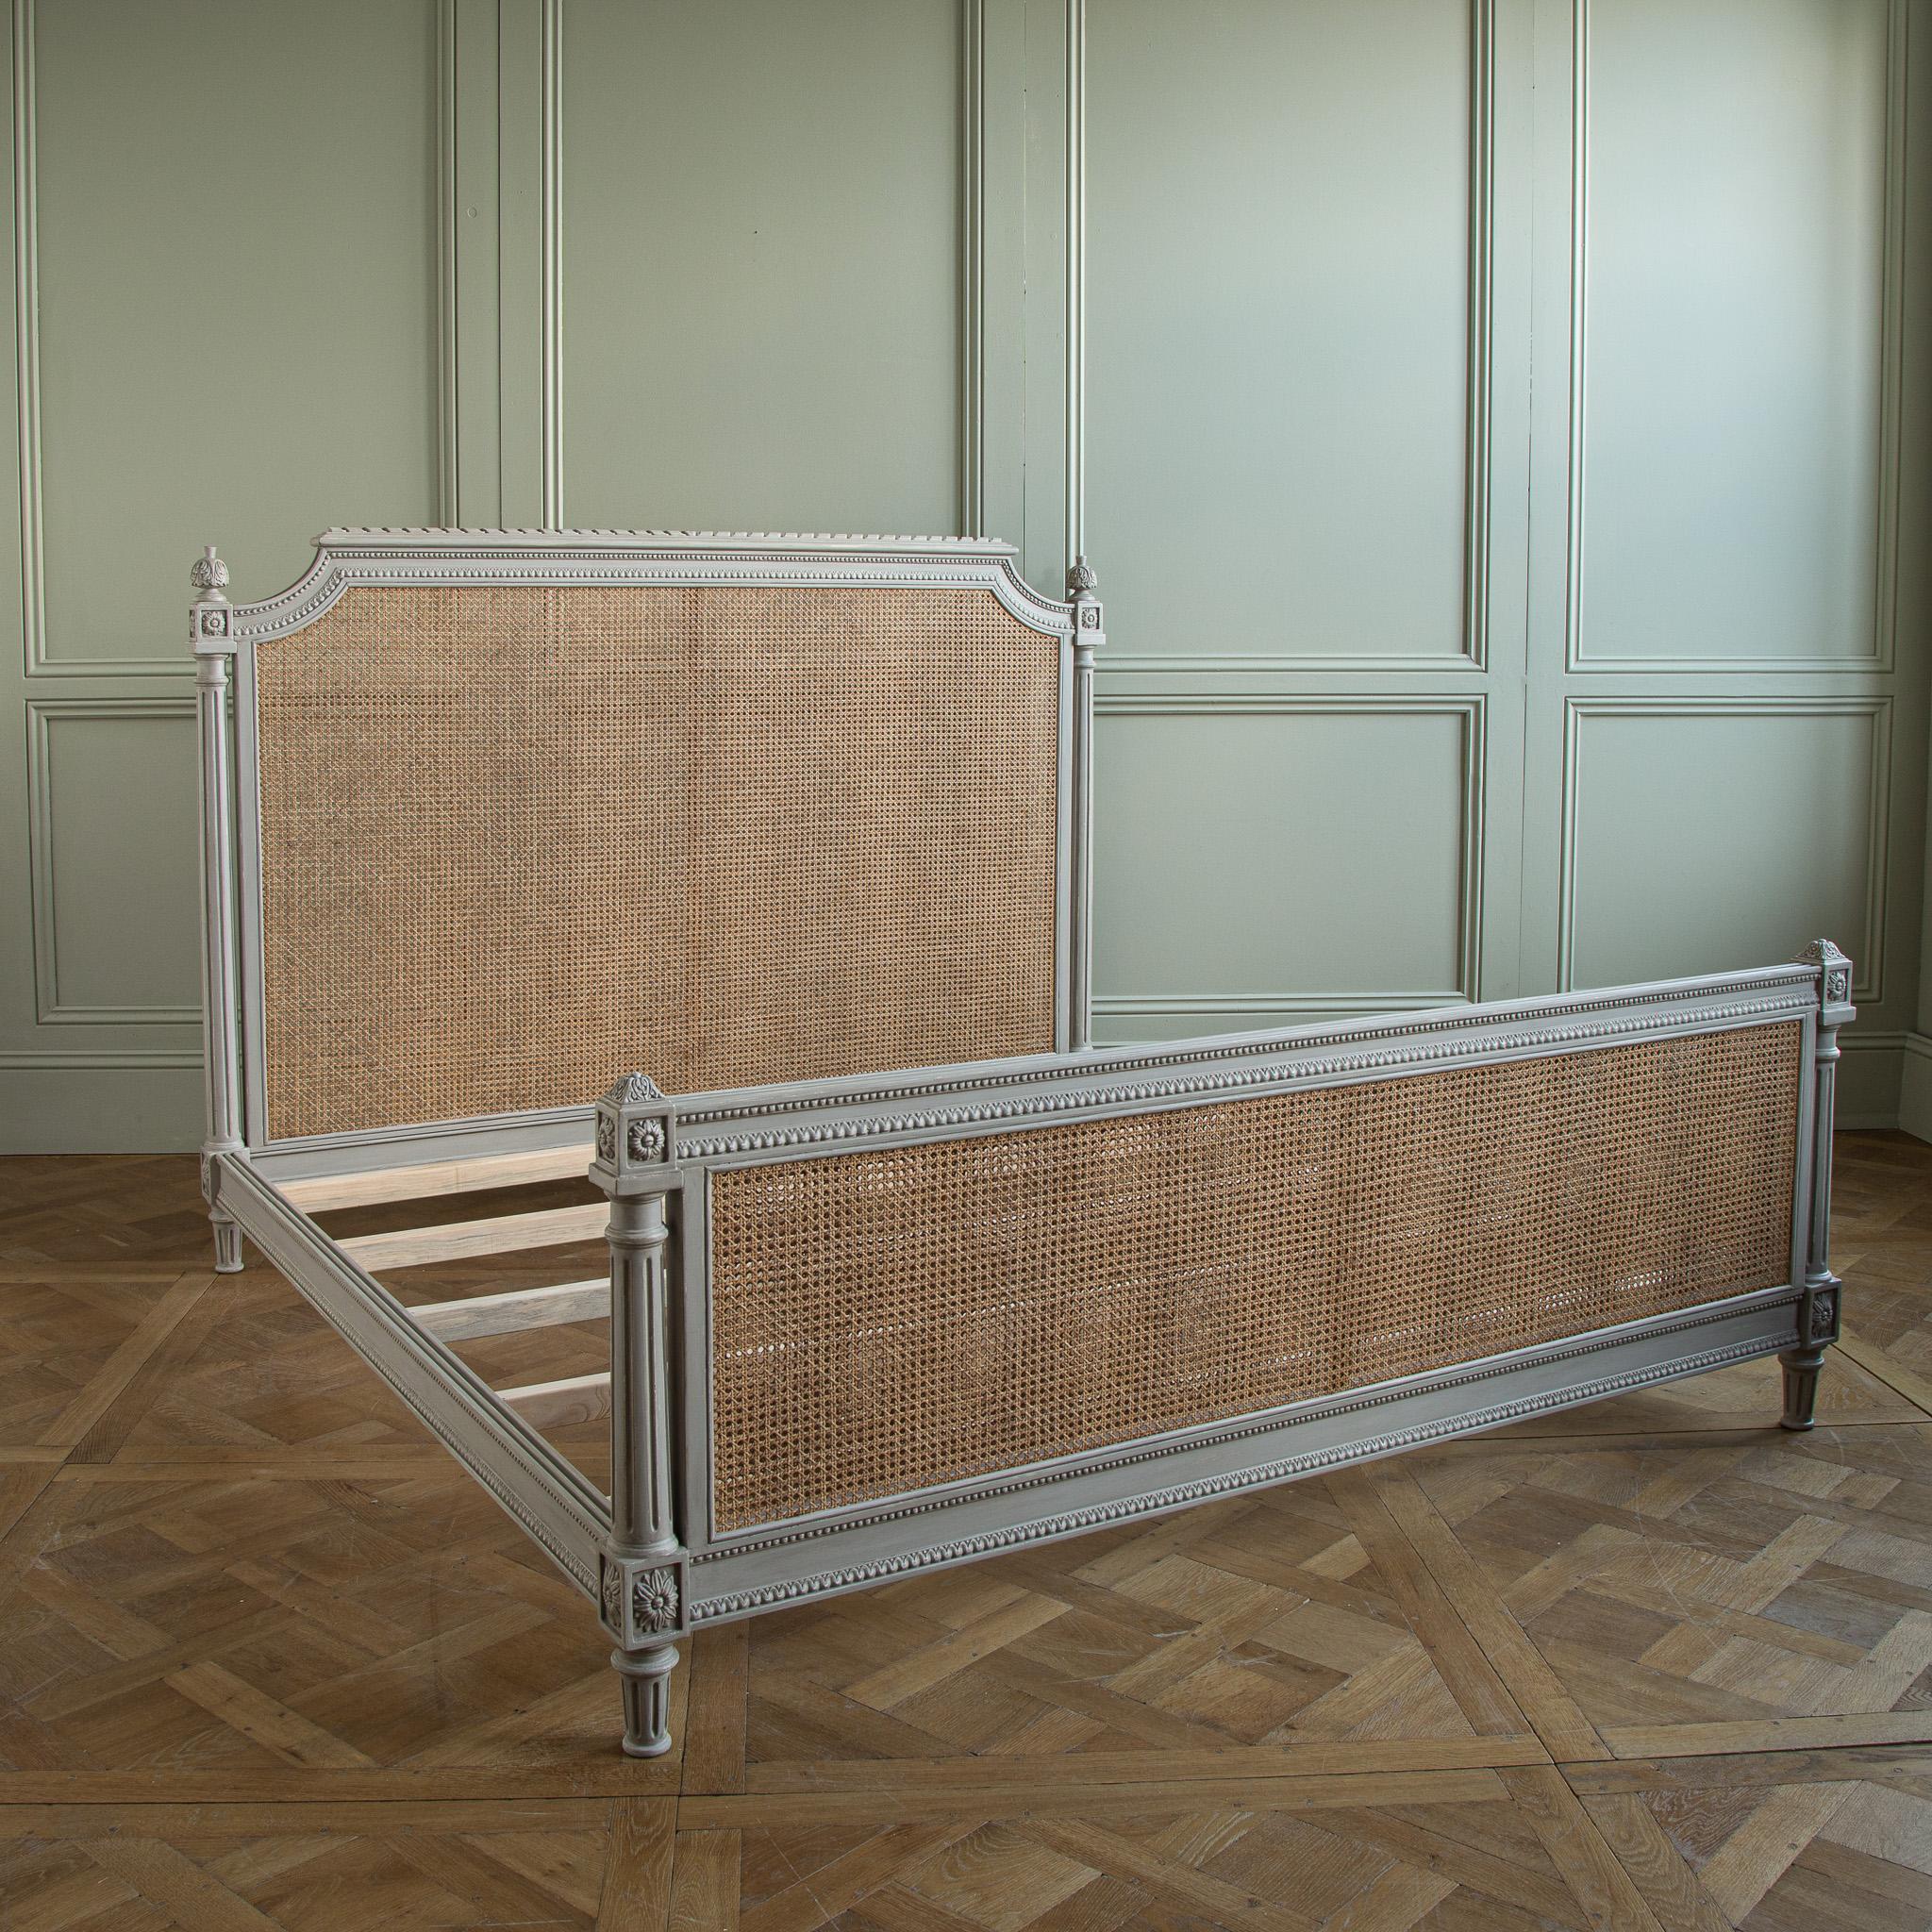 Das Bett Bergère ist ein klassisches, französisches Design im Stil von Louis XVI. 
Diese Epoche gründet auf dem 